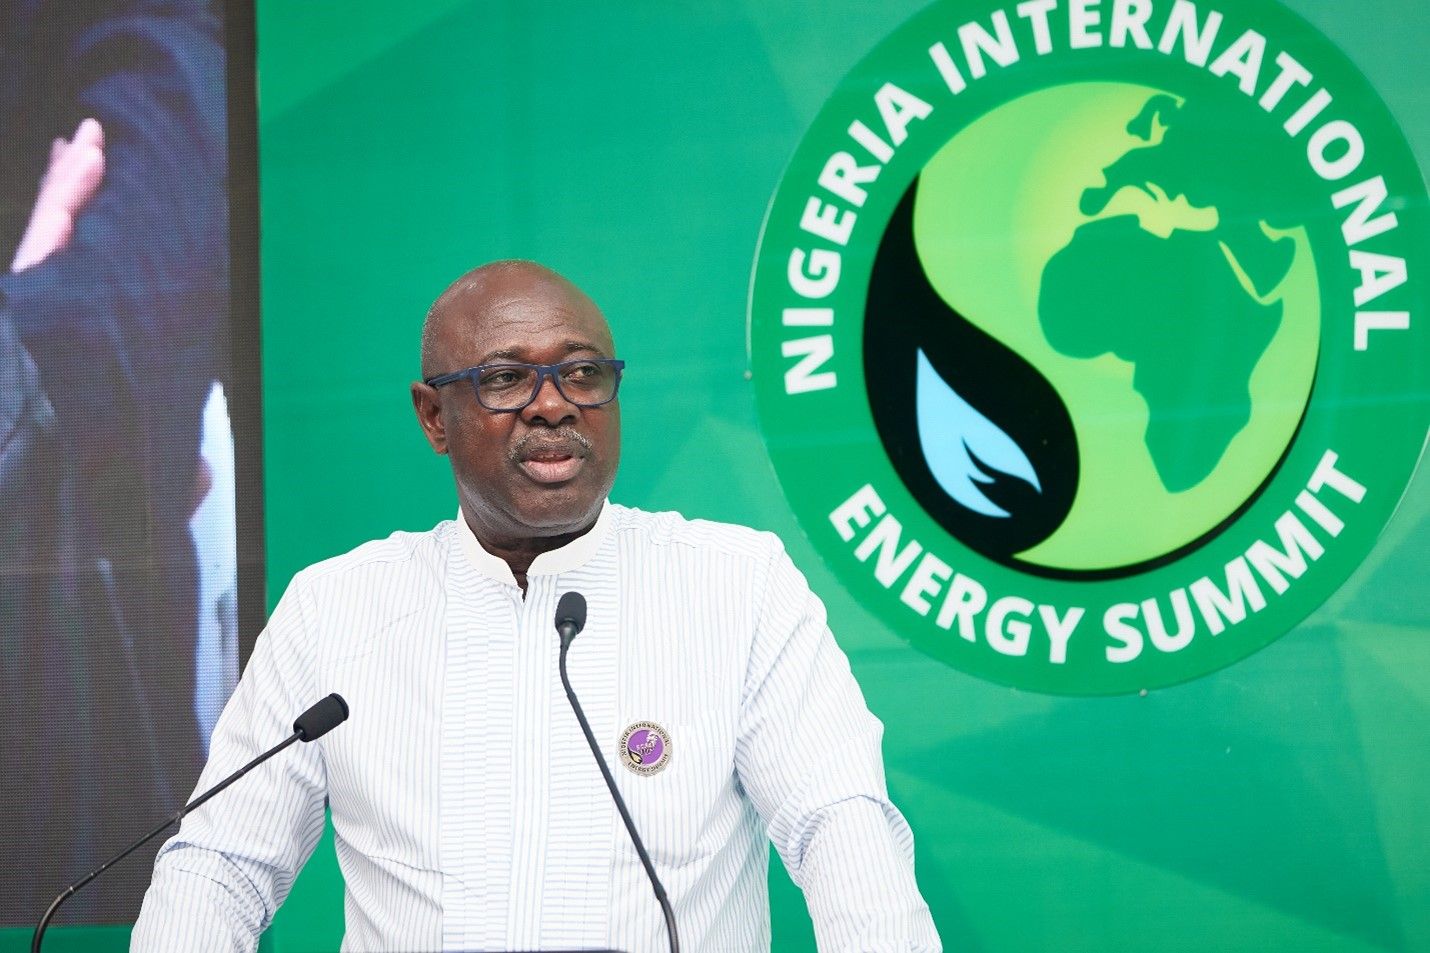 Nigeria International Energy Summit (NIES)